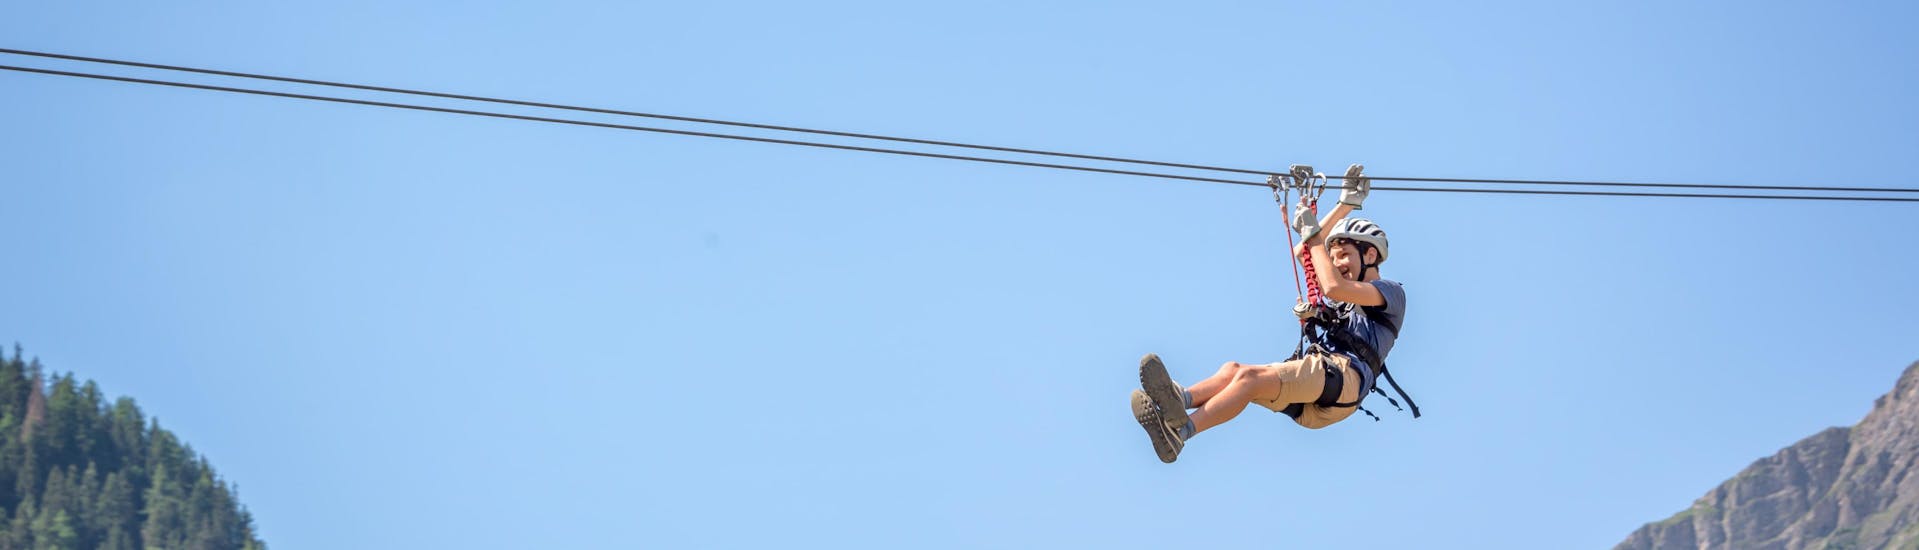 Un giovane uomo in volo sospeso da una zipline nell'hotspot di zipline presso Sudafrica.